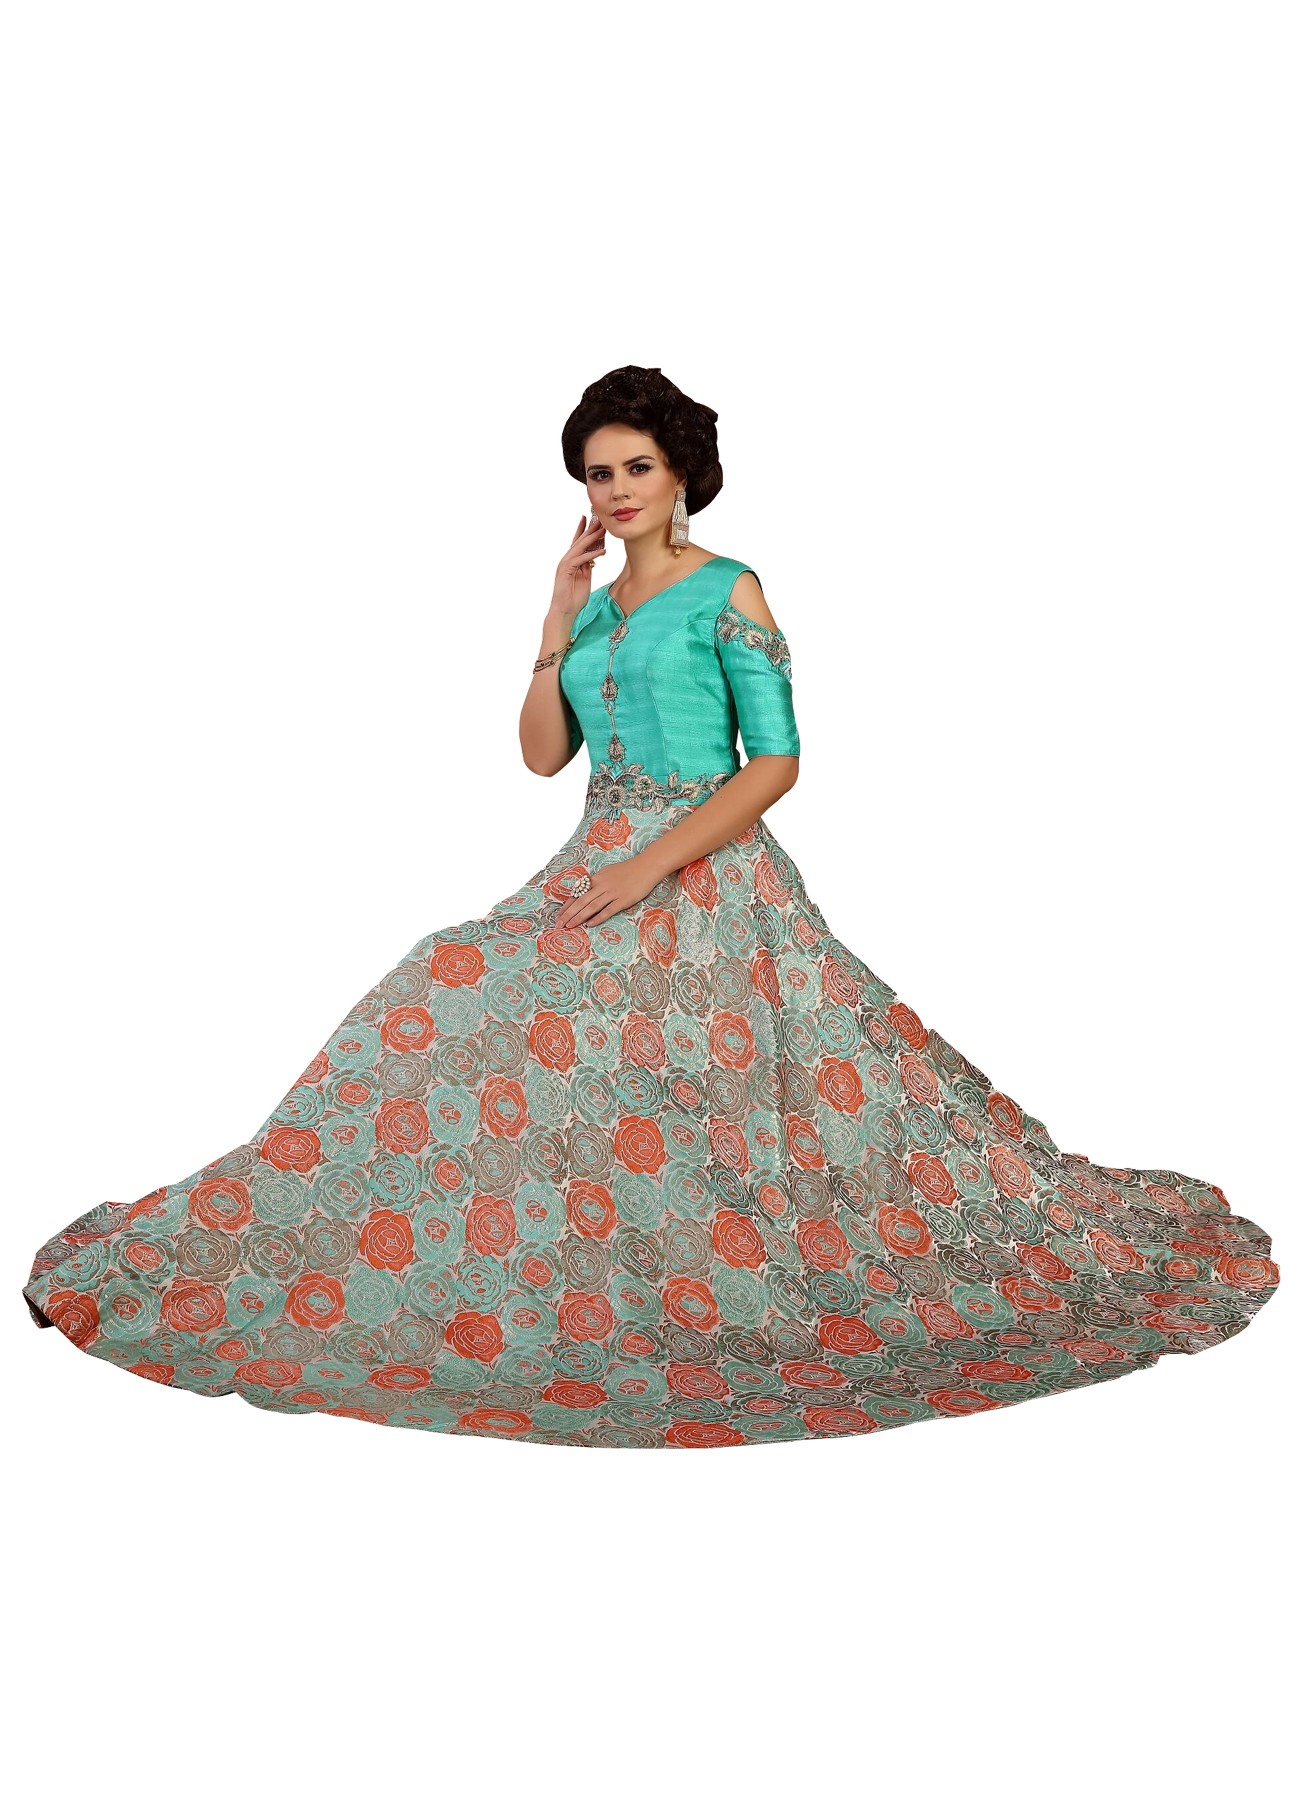 499 New Fancy Firozi Designer Kurti @499 | Kurti designs, Blue colour dress,  Clothes for women